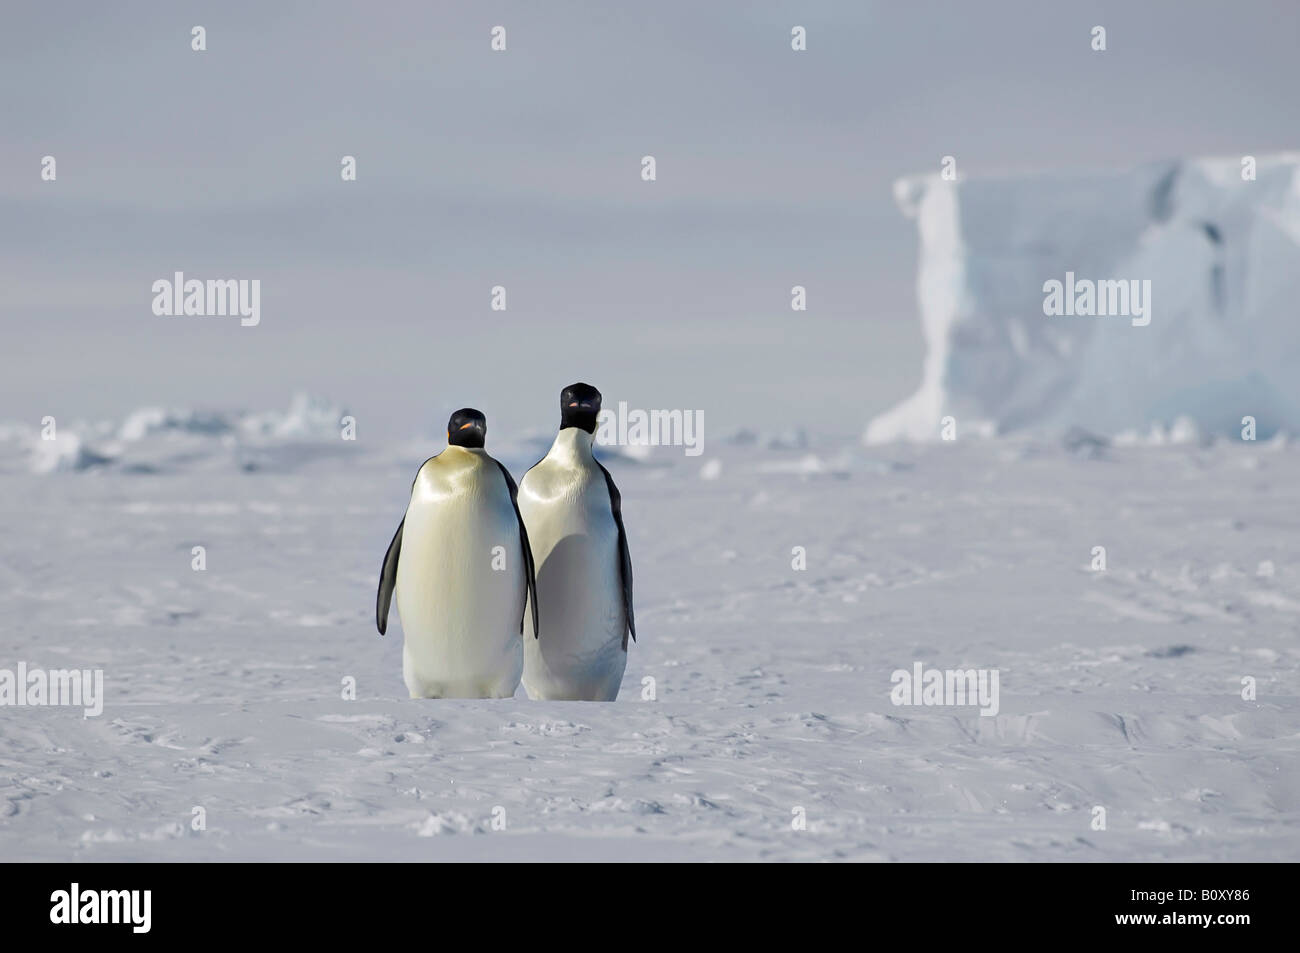 Pinguino imperatore (Aptenodytes forsteri), due animali in piedi in un bel pacchetto antartica Ice scenario con una tabella in iceberg Foto Stock